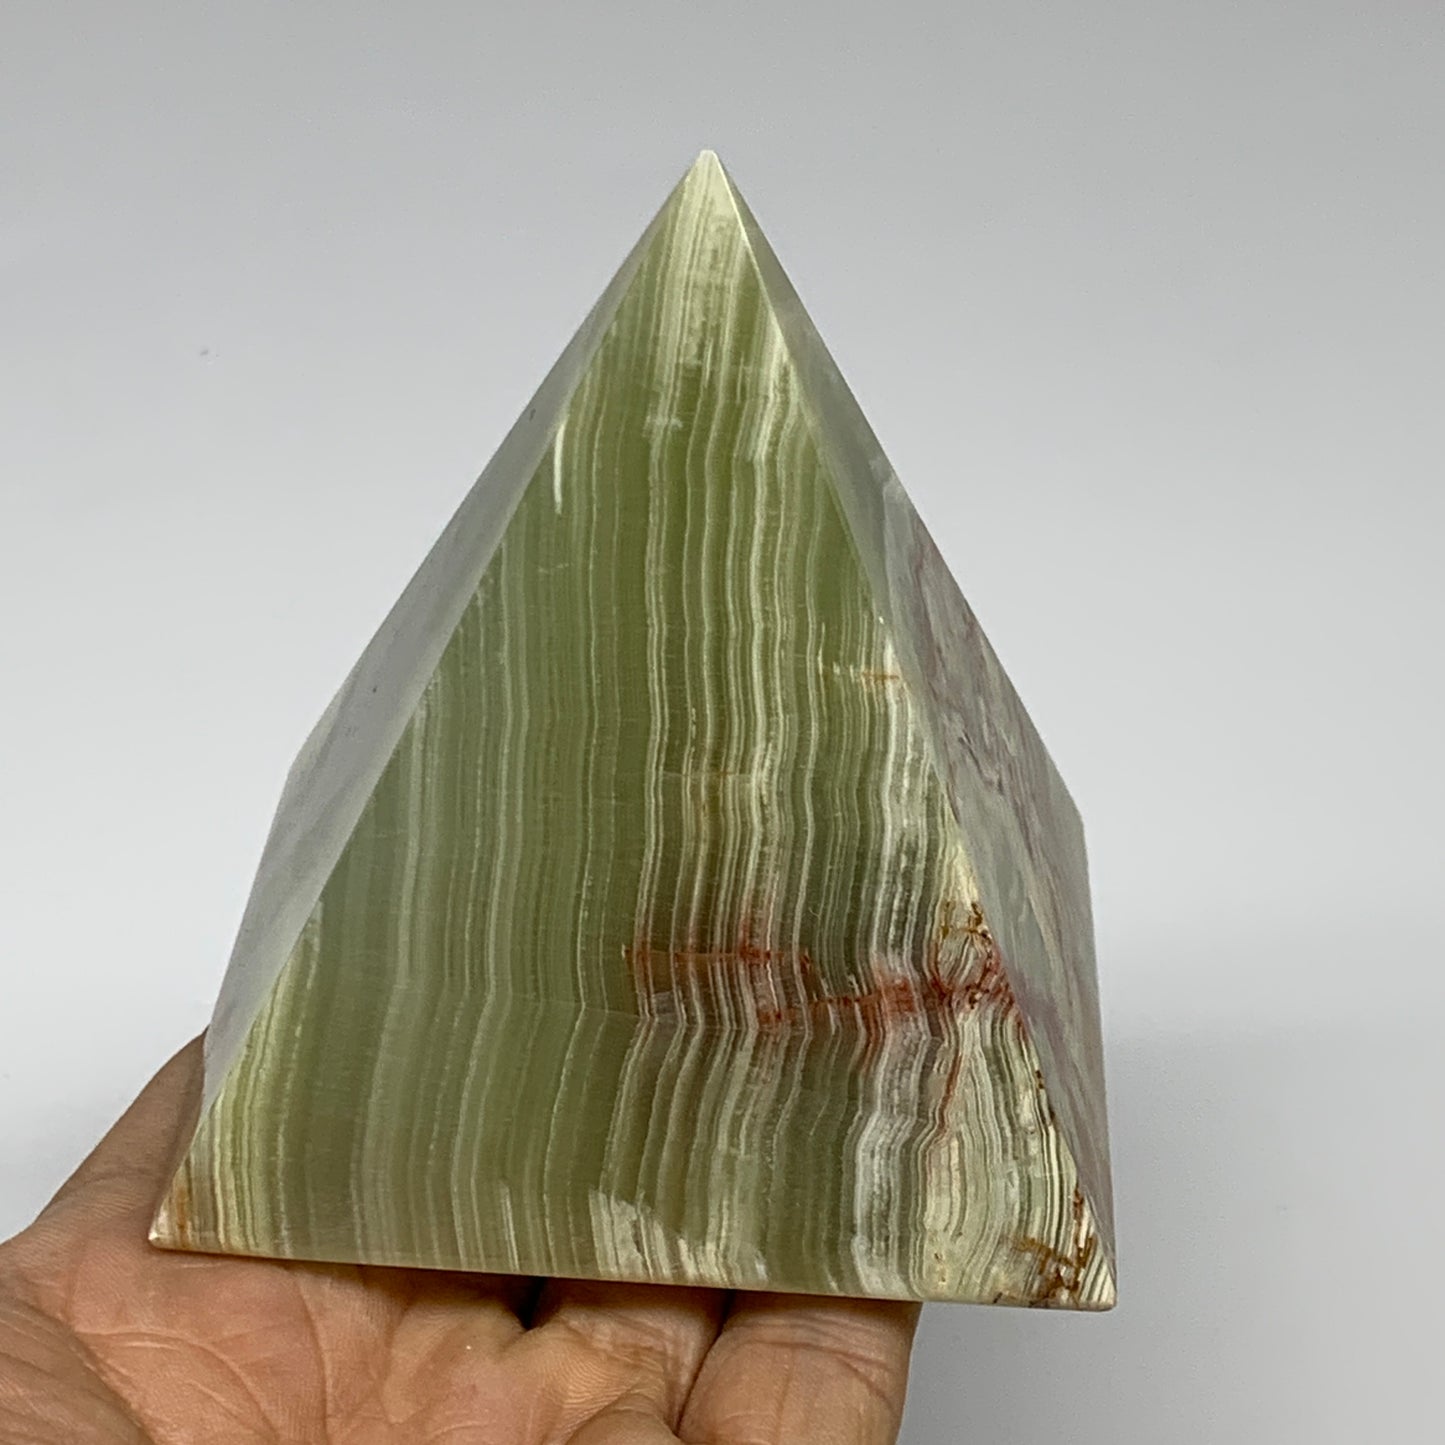 0.94 lbs, 3"x2.9"x2.9", Green Onyx Pyramid Gemstone Crystal, B32453